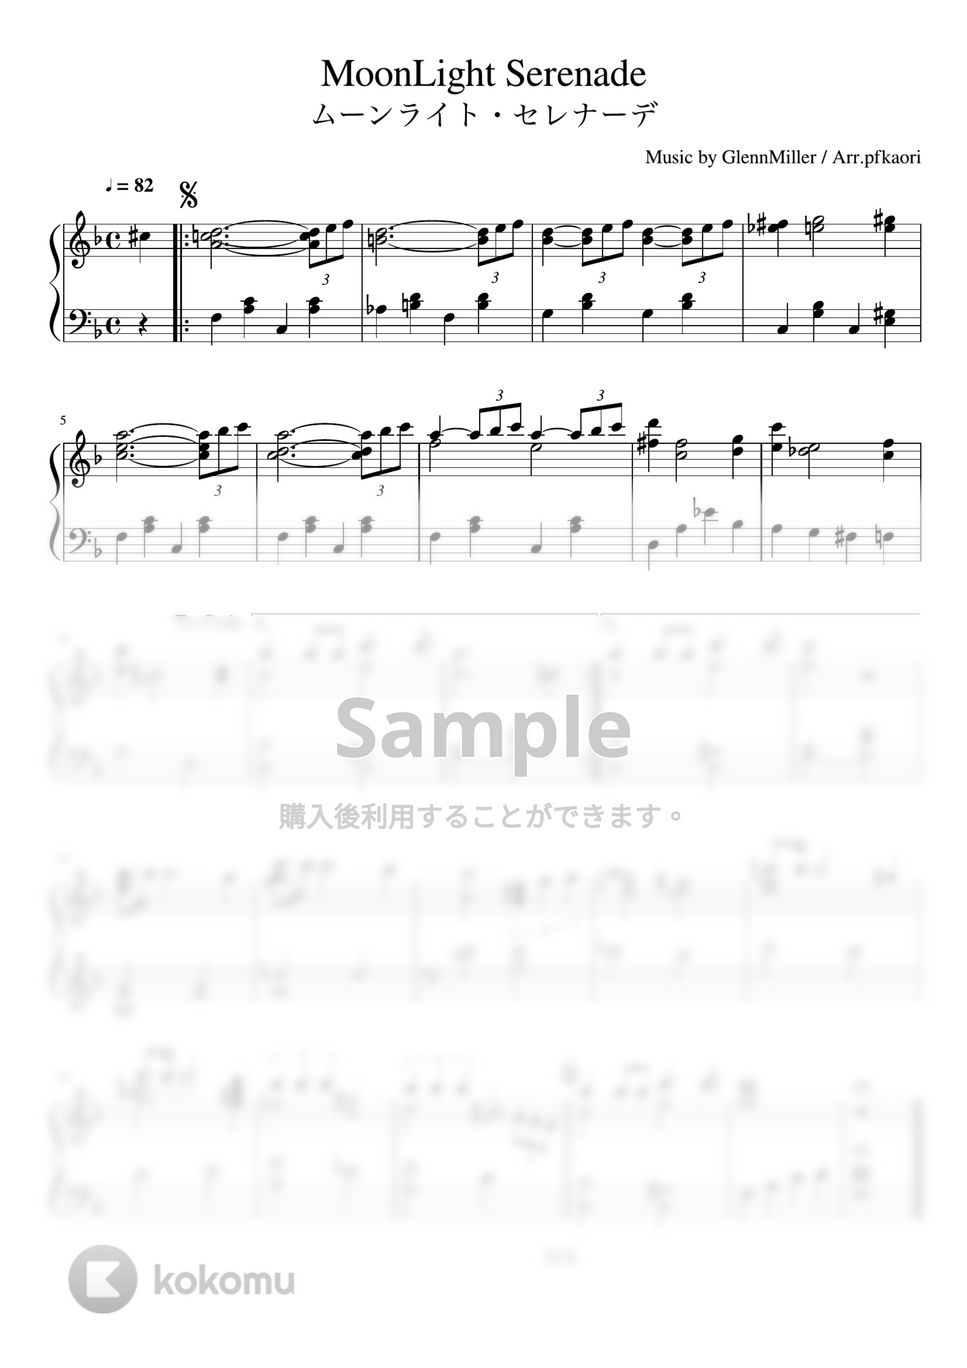 グレンミラー - ムーンライトセレナーデ (Dm・ピアノソロ中級) by pfkaori